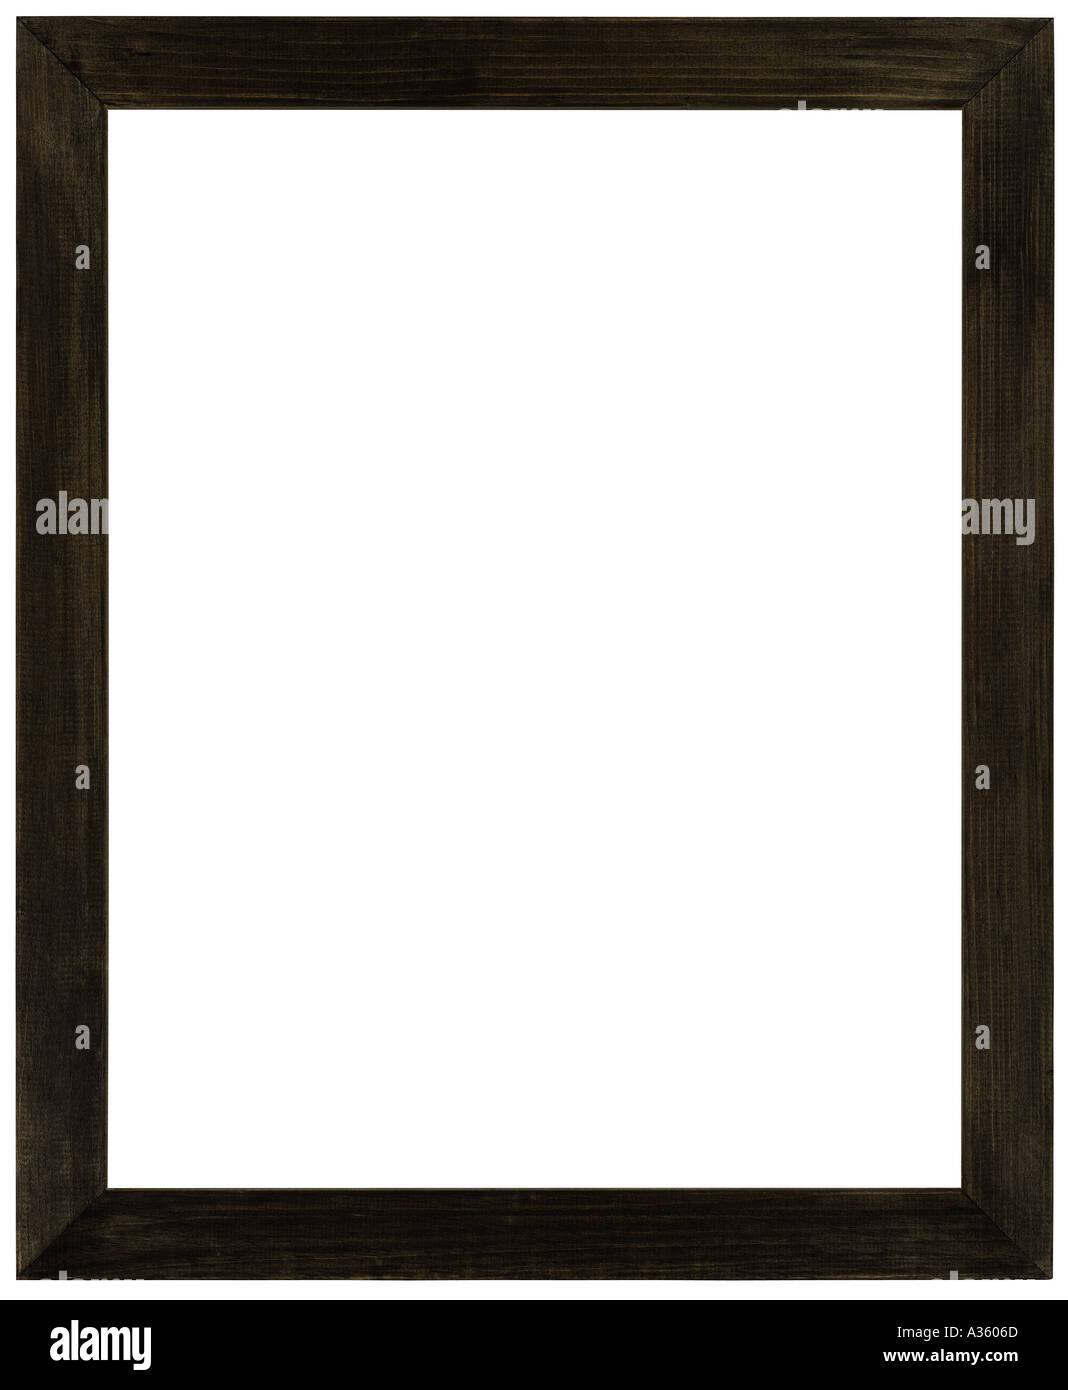 Una fina negra rectangular vertical del bastidor de madera Foto de stock